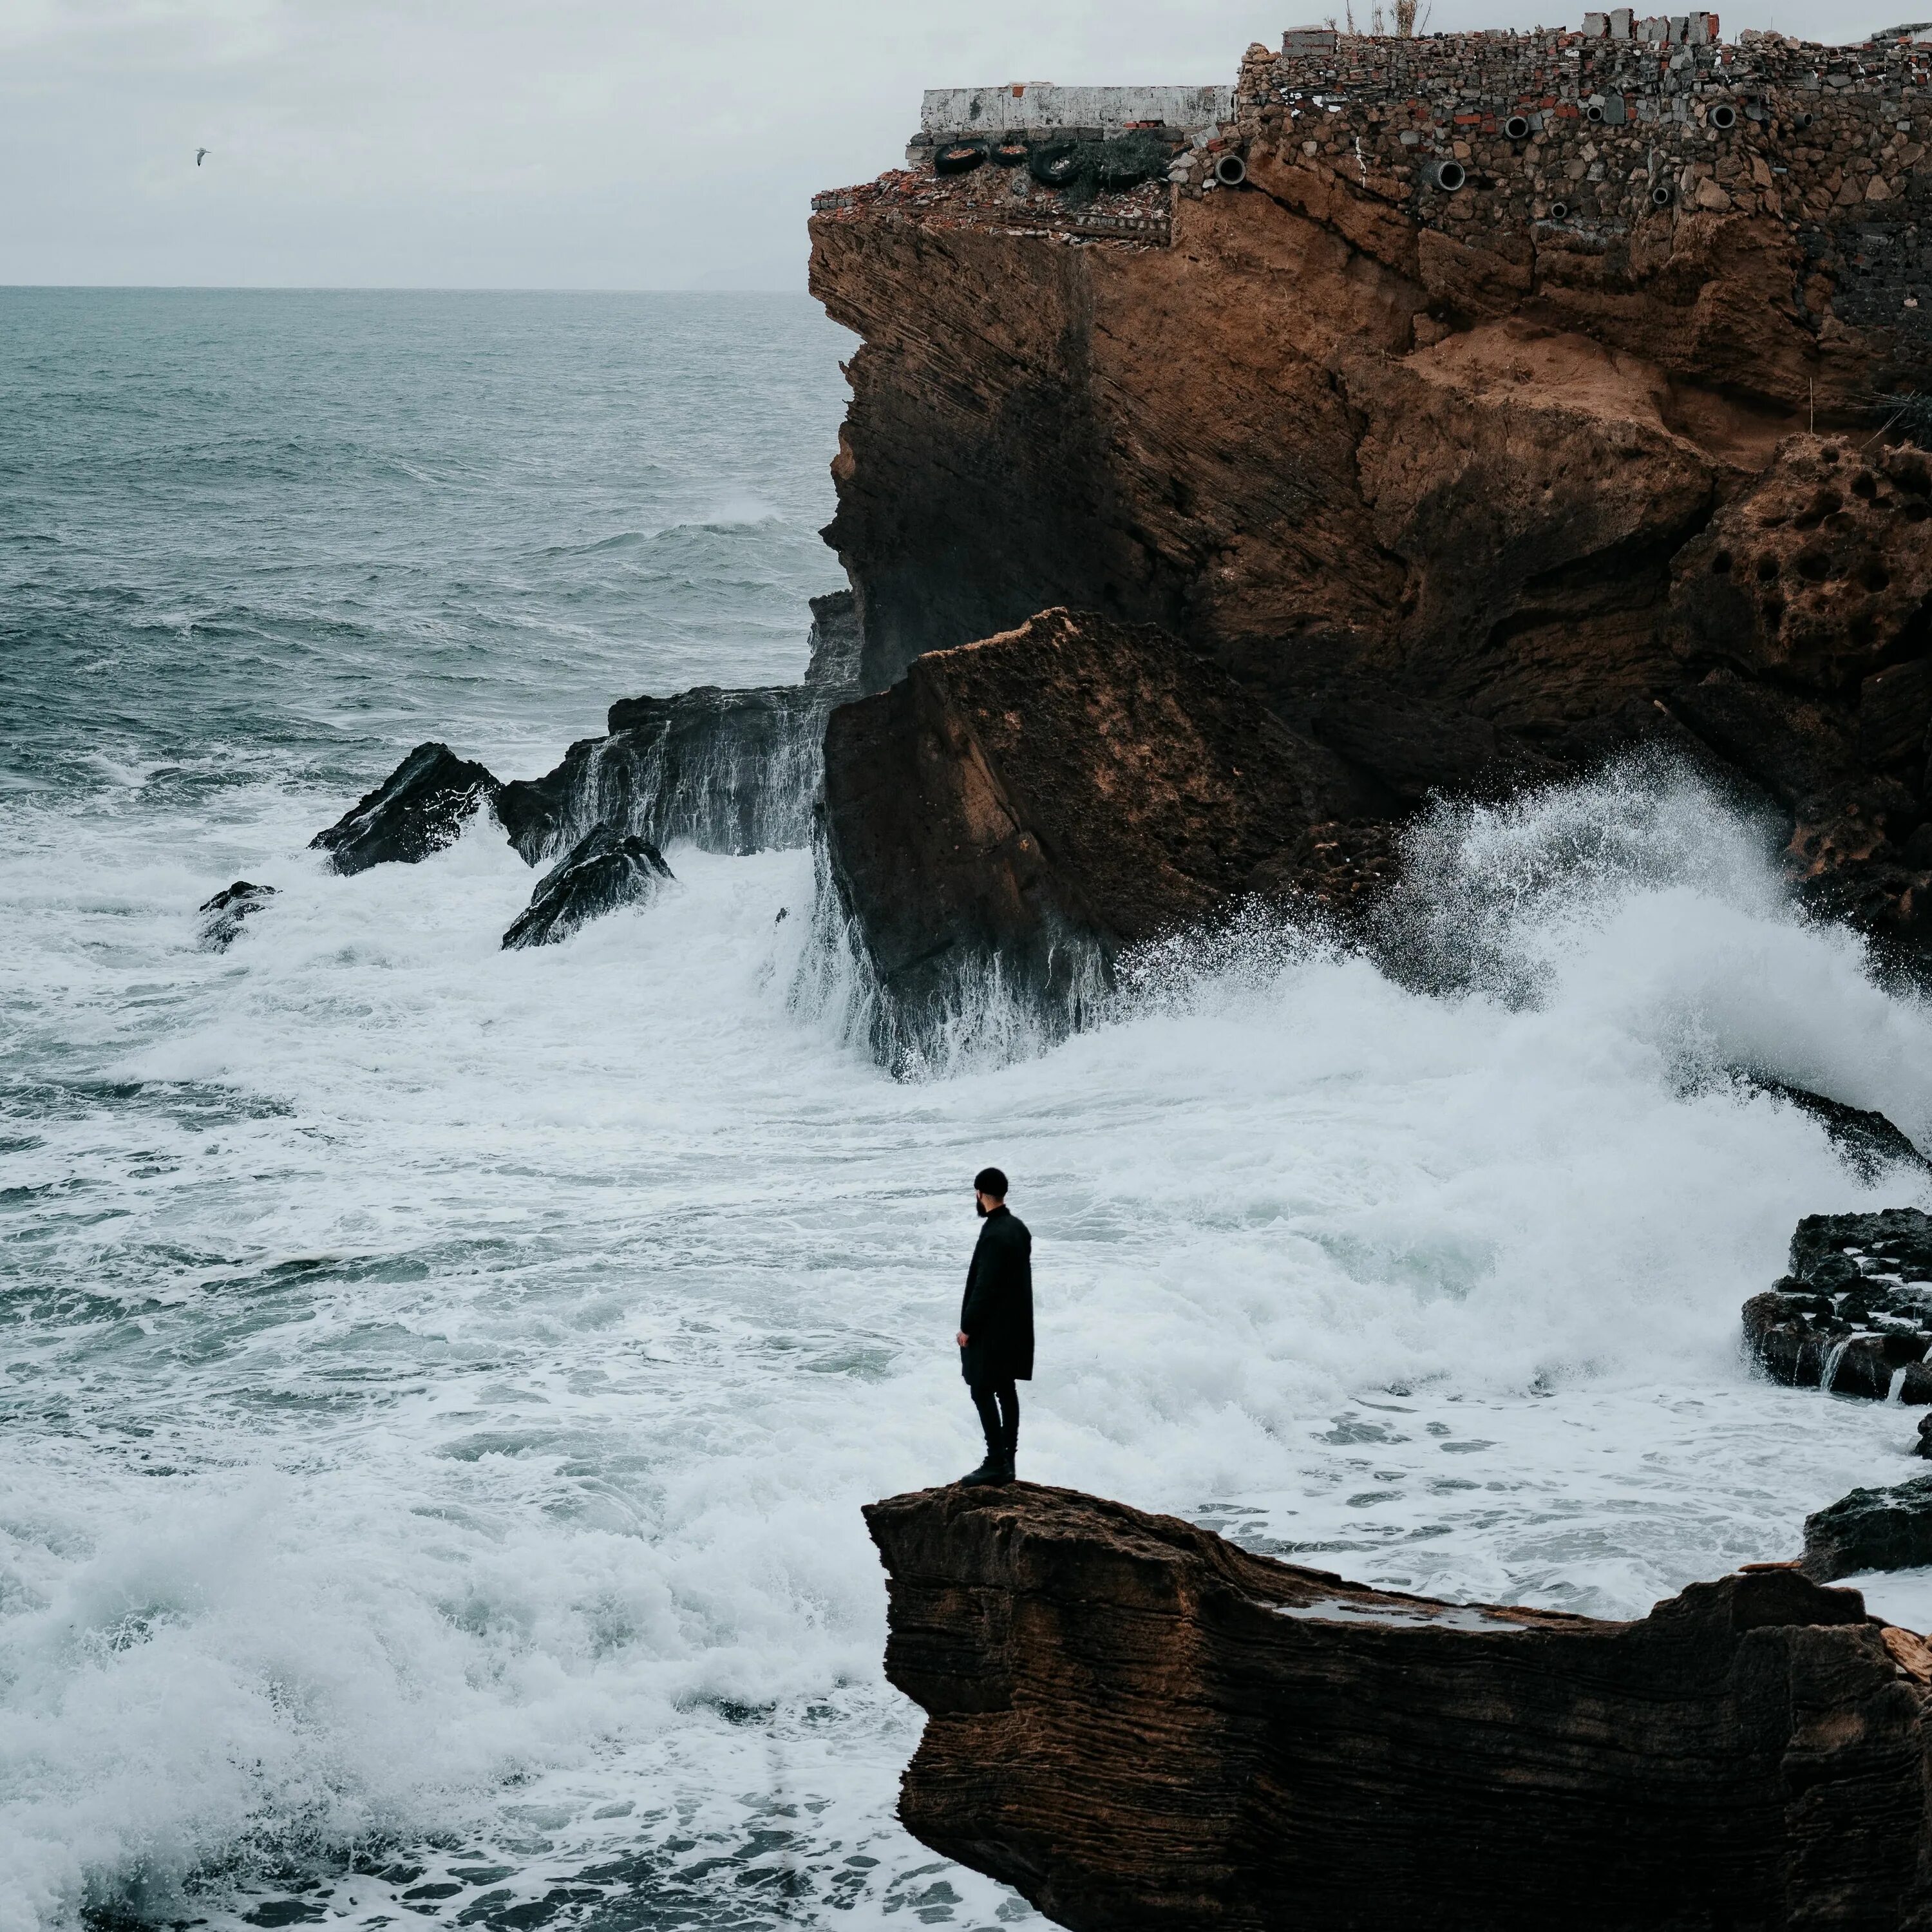 Я стану твоим океаном. Море скалы. Море со скалами. Человек на скале у моря. Море, скалы человек.